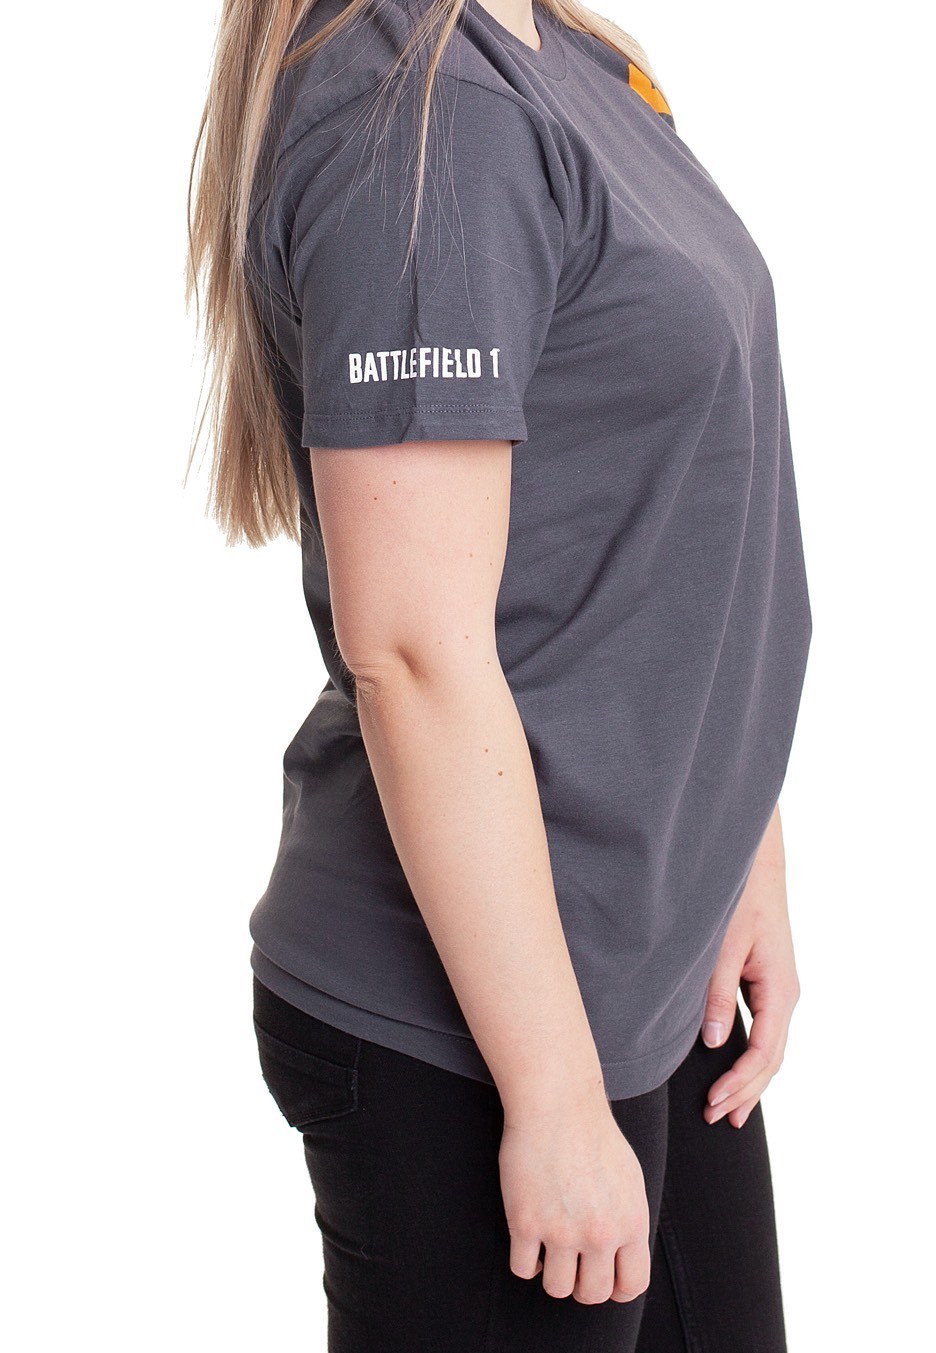 Battlefield - BattleField 1 Grey - T-Shirt